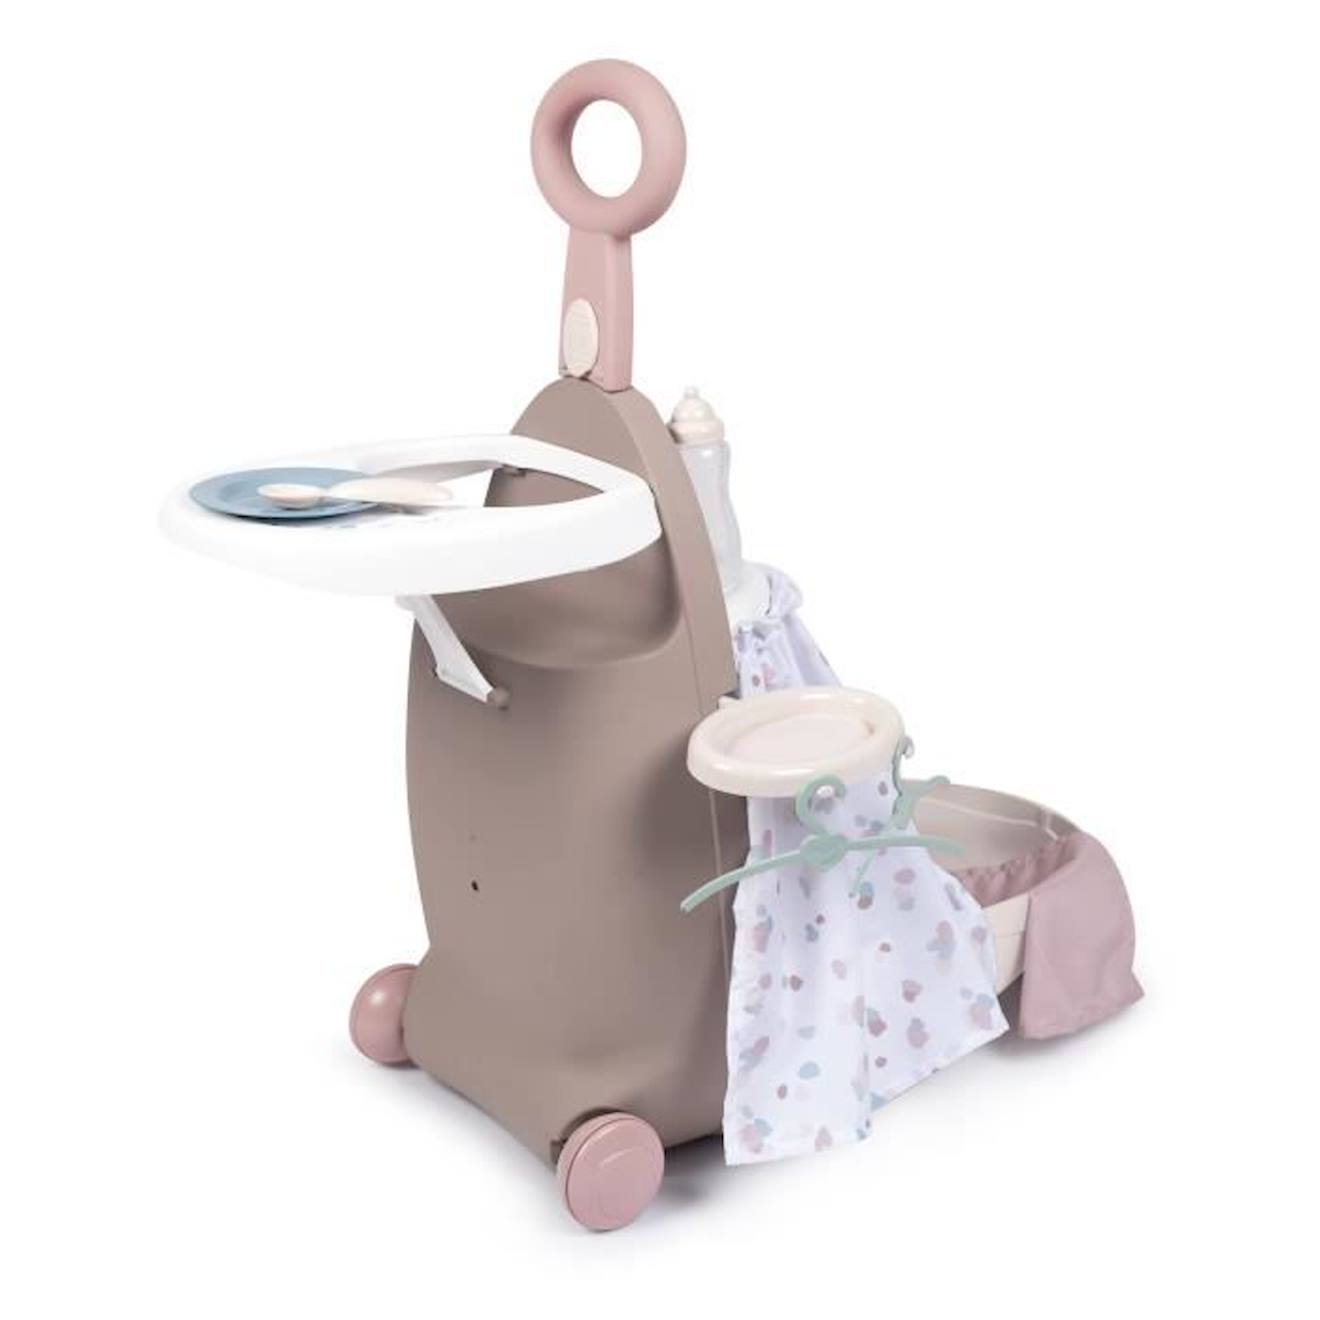 Valise Nurserie 3 En 1 - Baby Nurse - Pour Poupons Jusqu'à 42cm - Beige/rose/blanc Beige